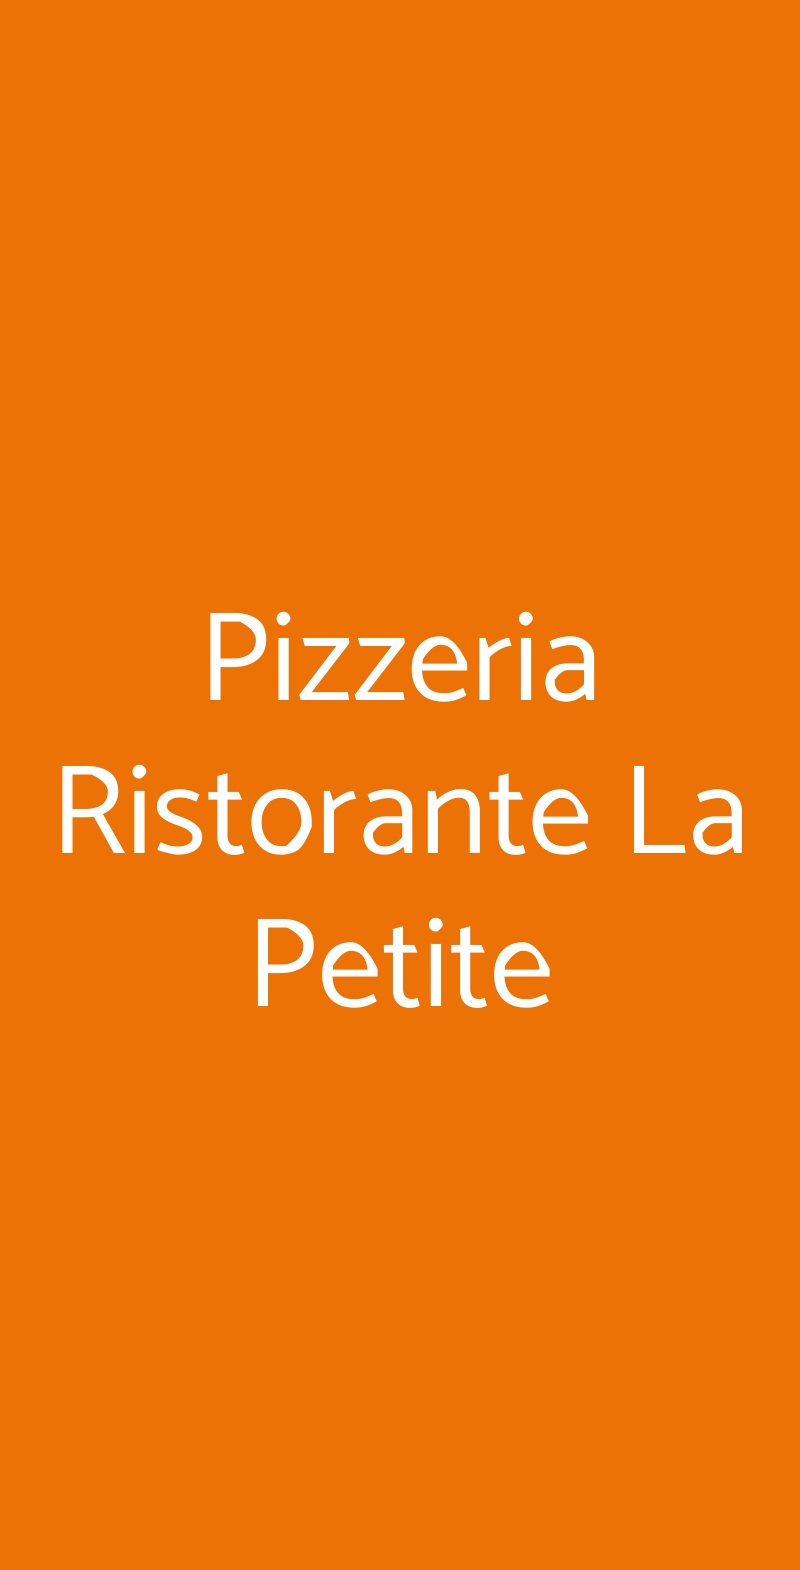 Pizzeria Ristorante La Petite Torino menù 1 pagina